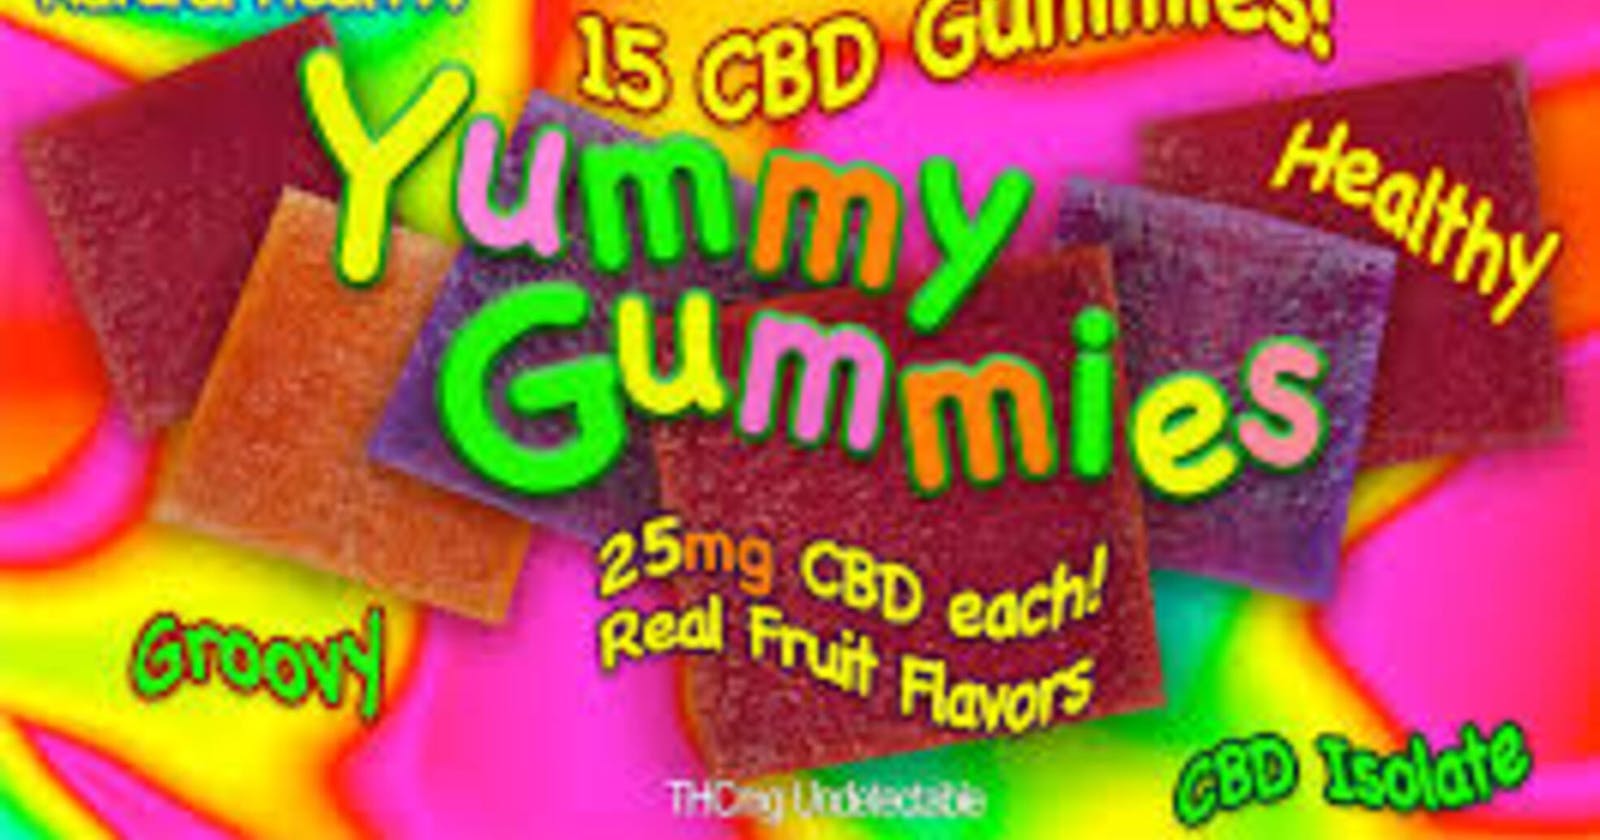 Yummy Yummy Gummies Official Website